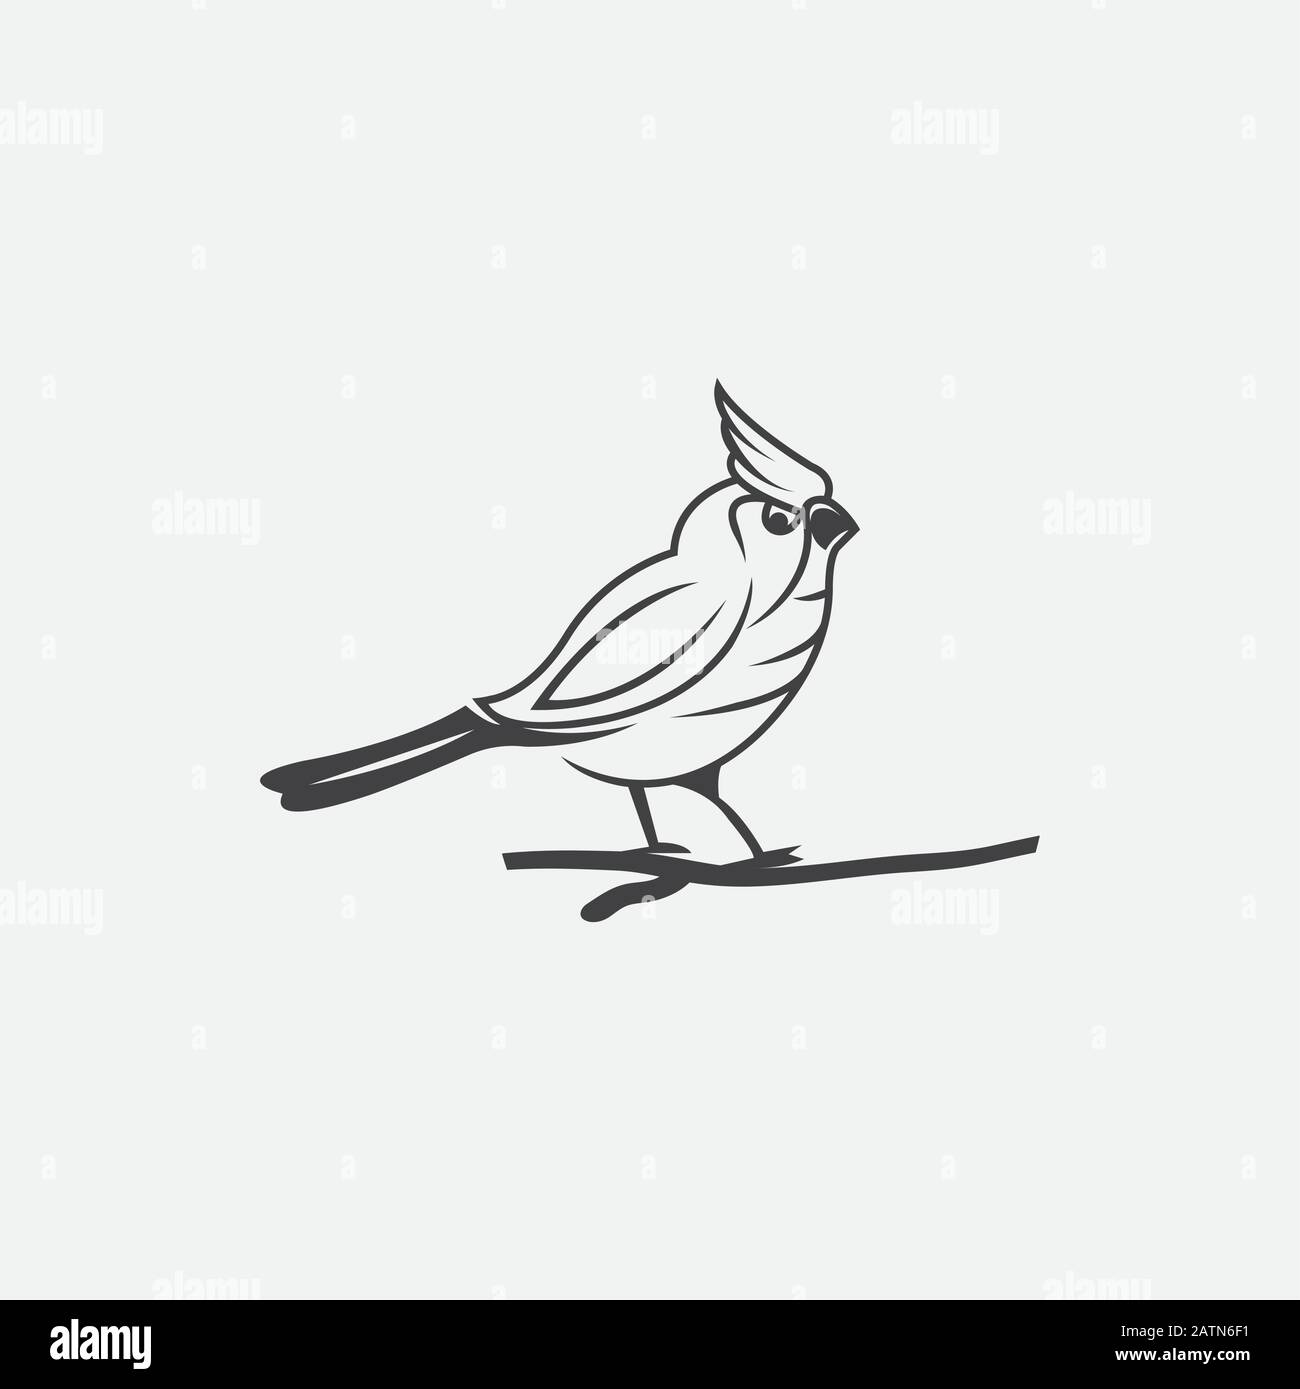 uccelli con ali flitteranti sparso. Swallow, pappagallo o uccello colomba simbolo di libertà e pace o arredamento interno design Illustrazione Vettoriale